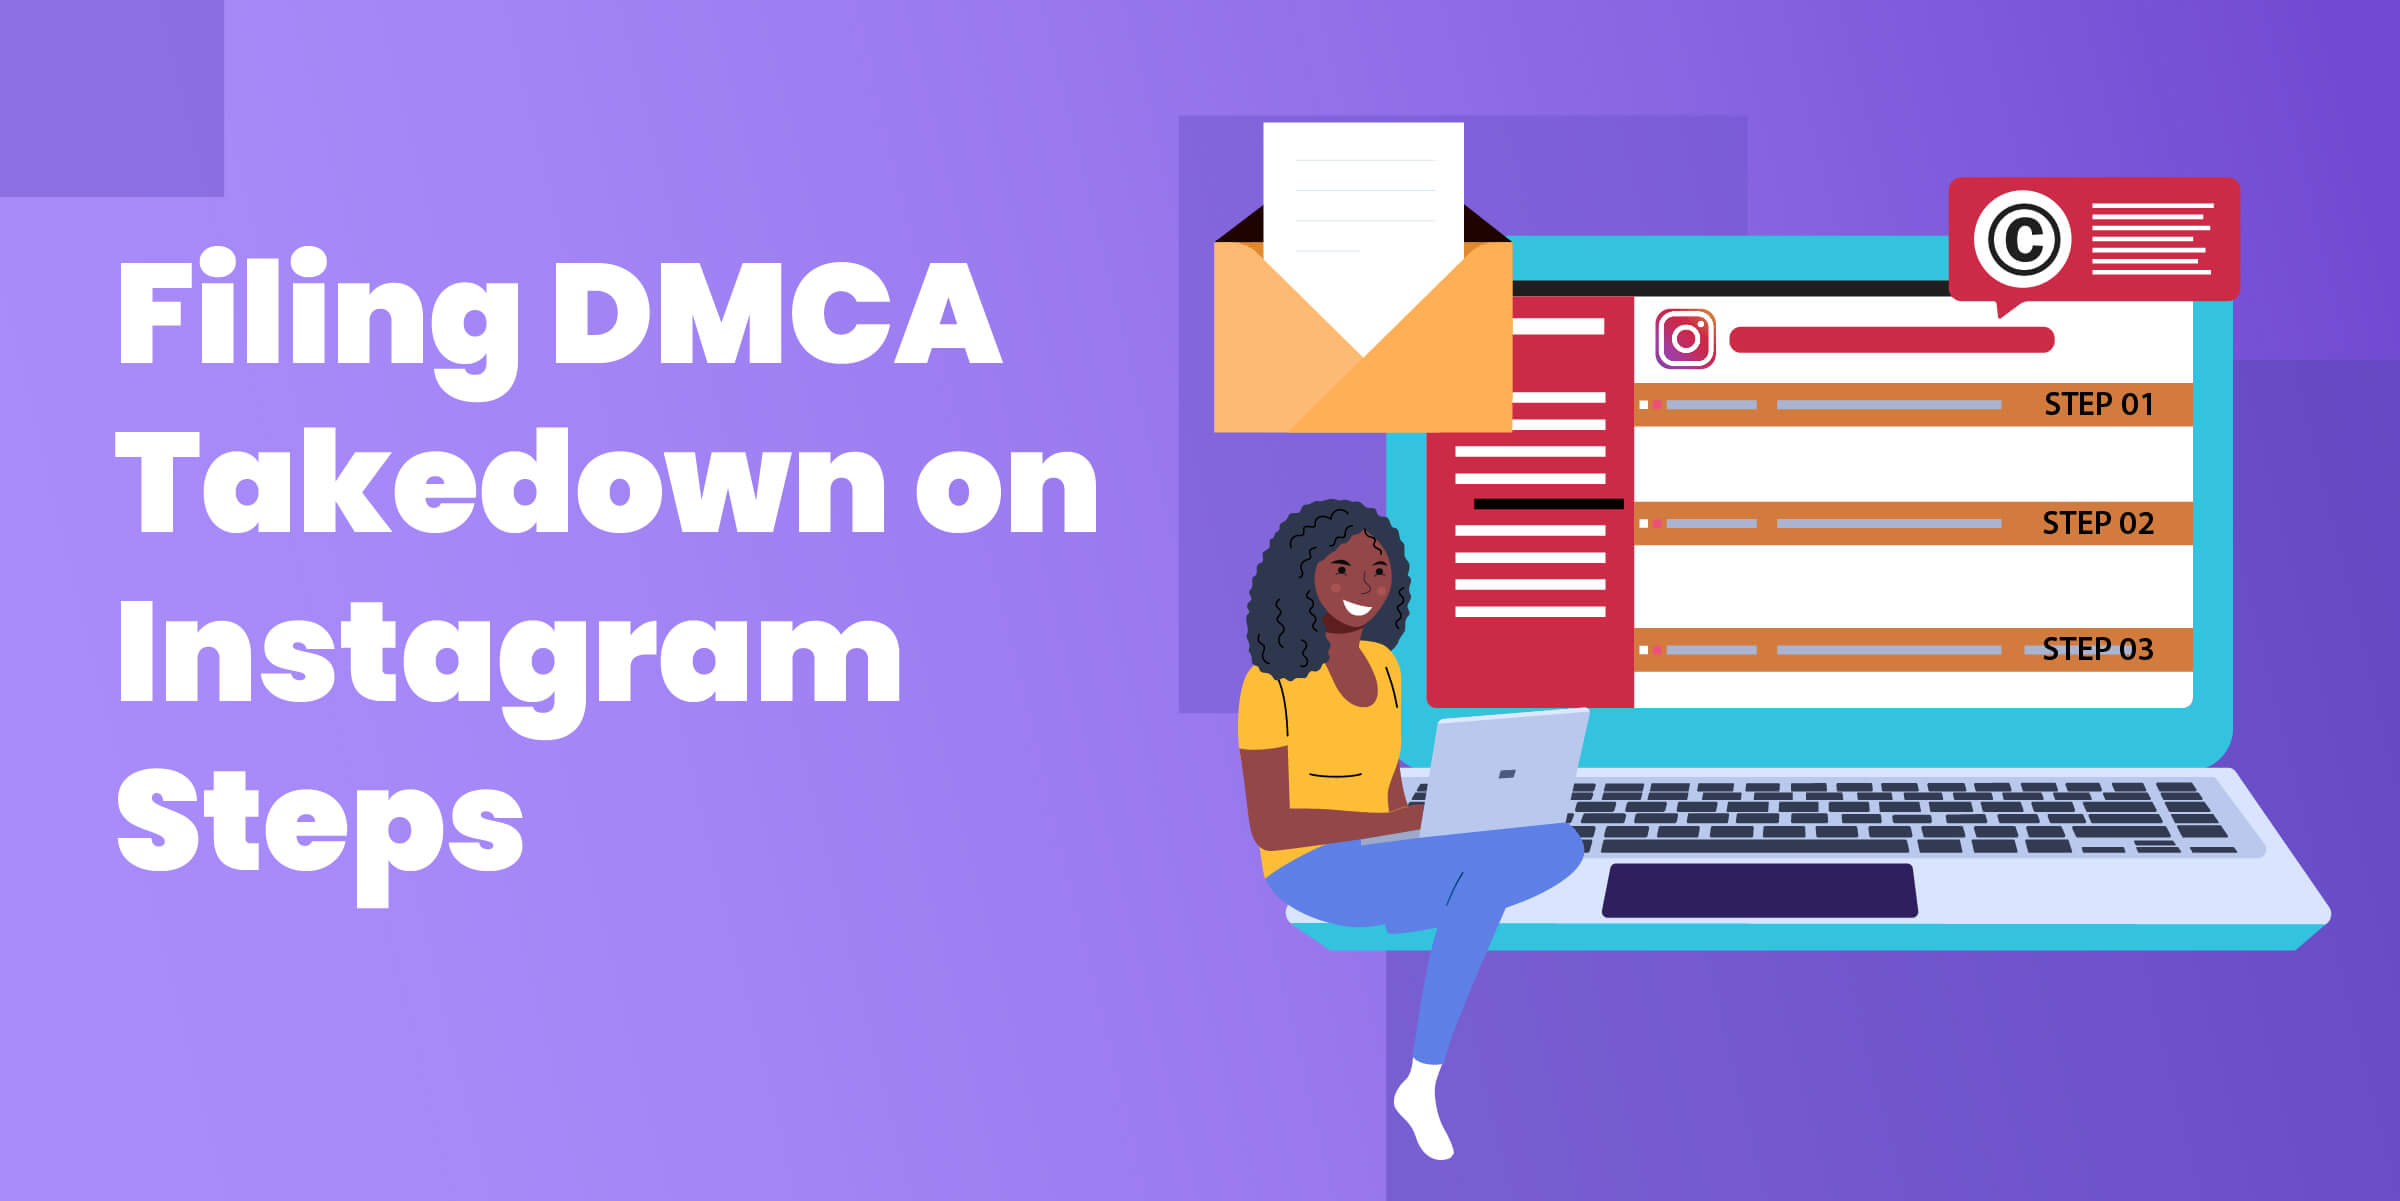 Filing DMCA Takedown Steps Instagram